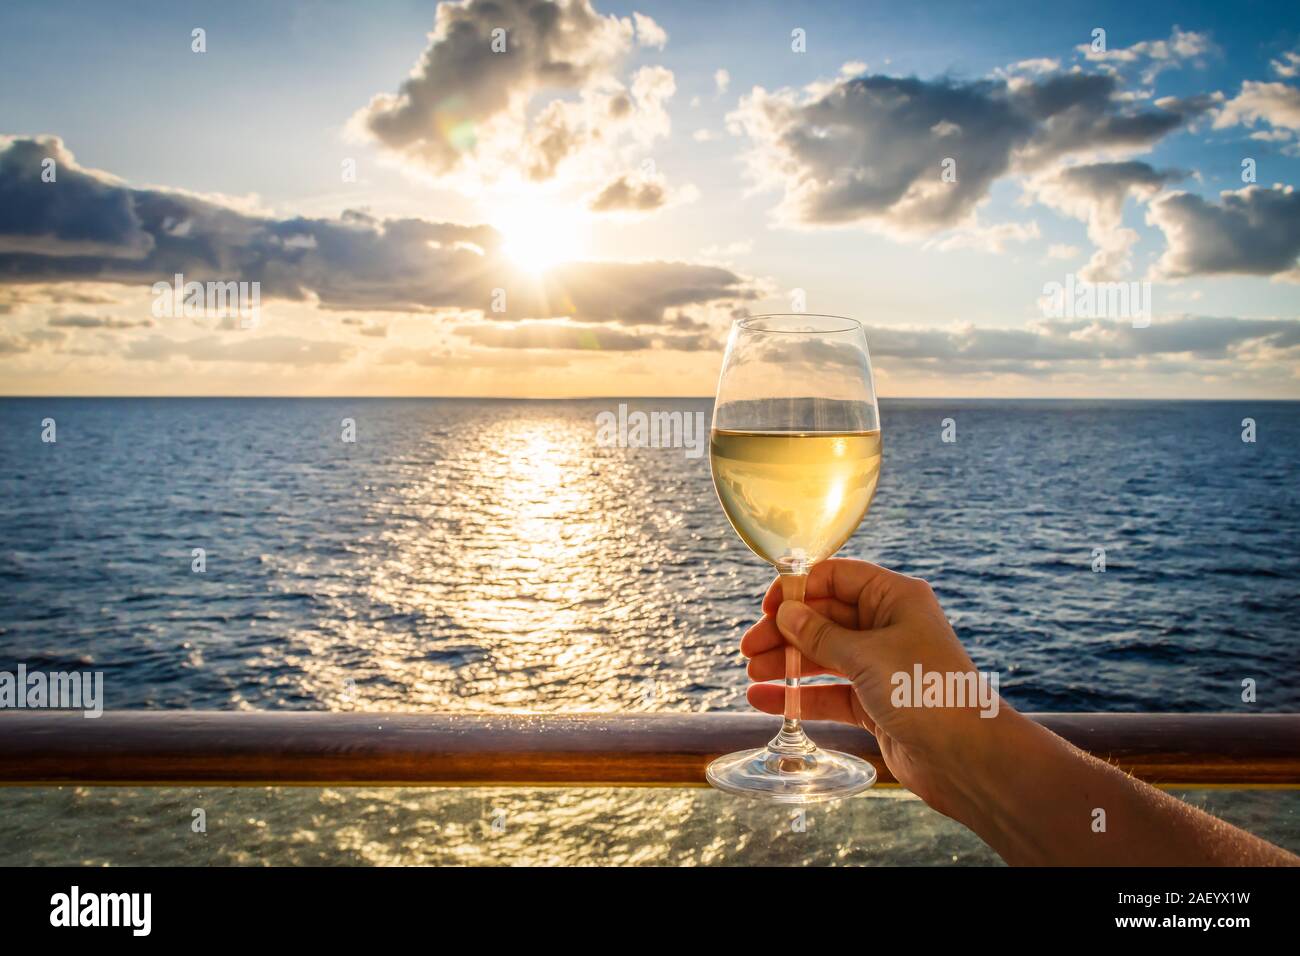 Durante la puesta de sol de una mano femenina brindis el año nuevo con un vaso de vino blanco. Foto tomada en un balcón de un crucero con una vista al mar. Foto de stock